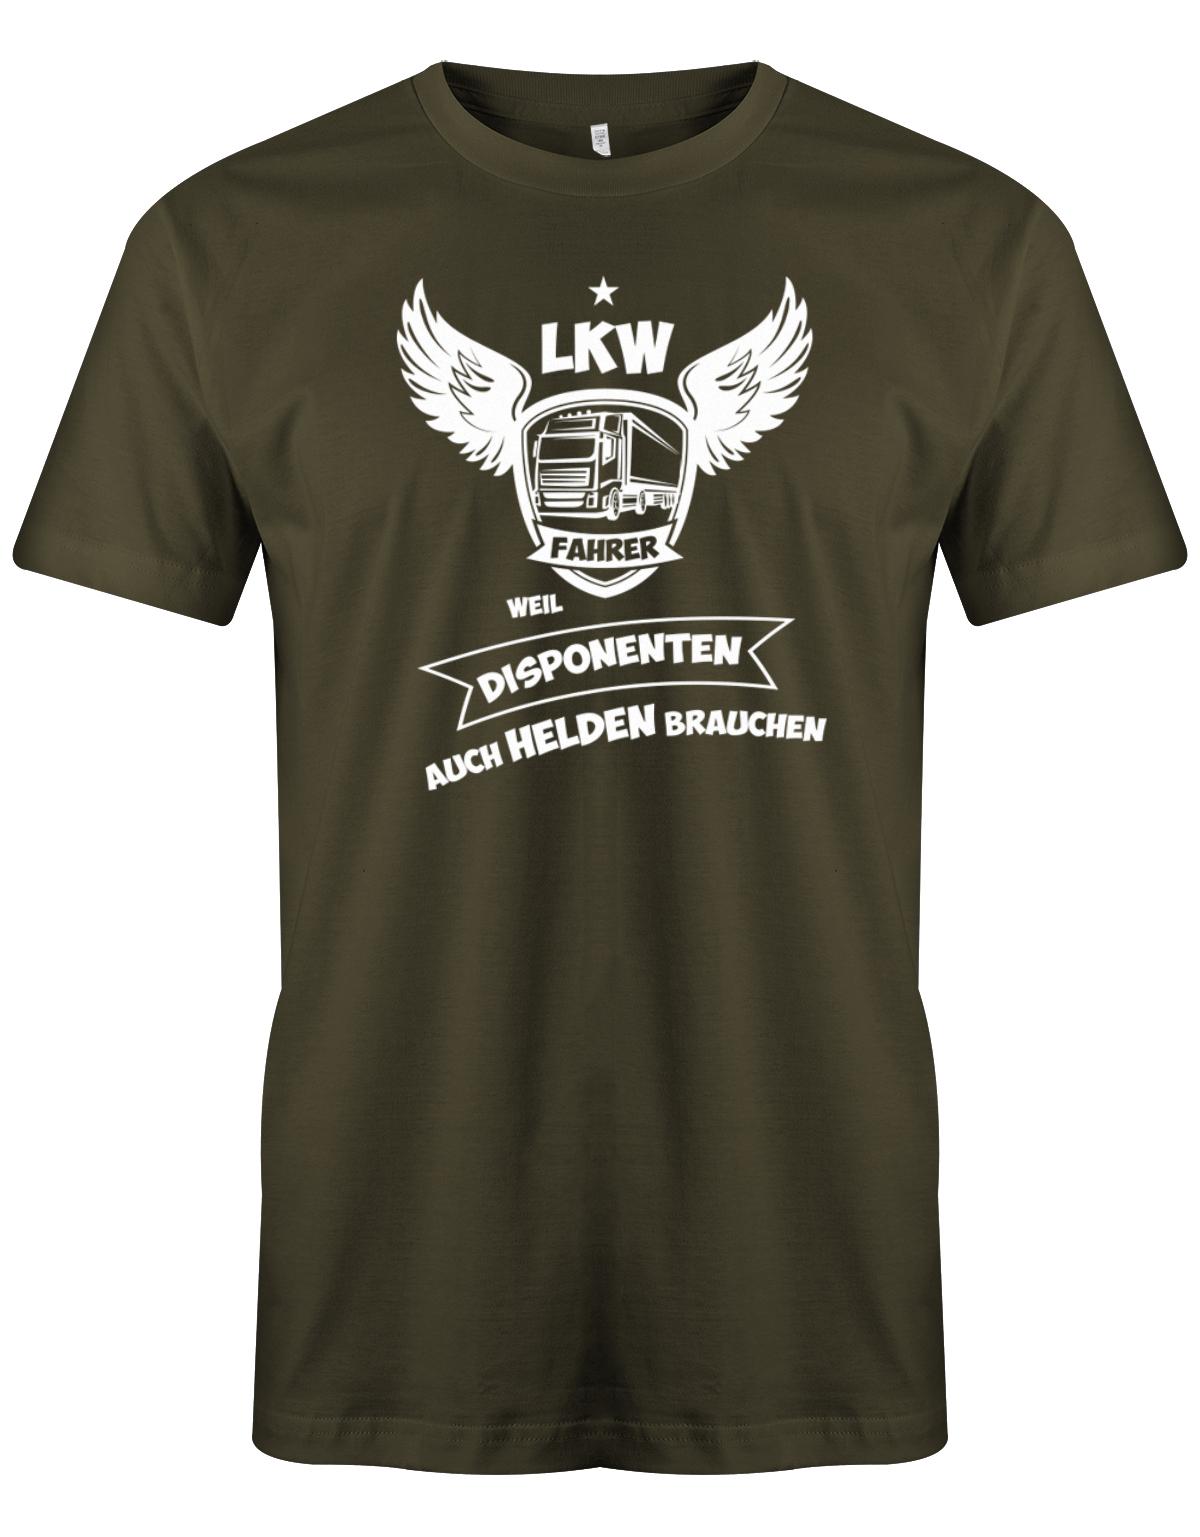 Lkw-Fahrer Shirt - Lkw-Fahrer, weil Disponenten auch Helden brauchen. Army